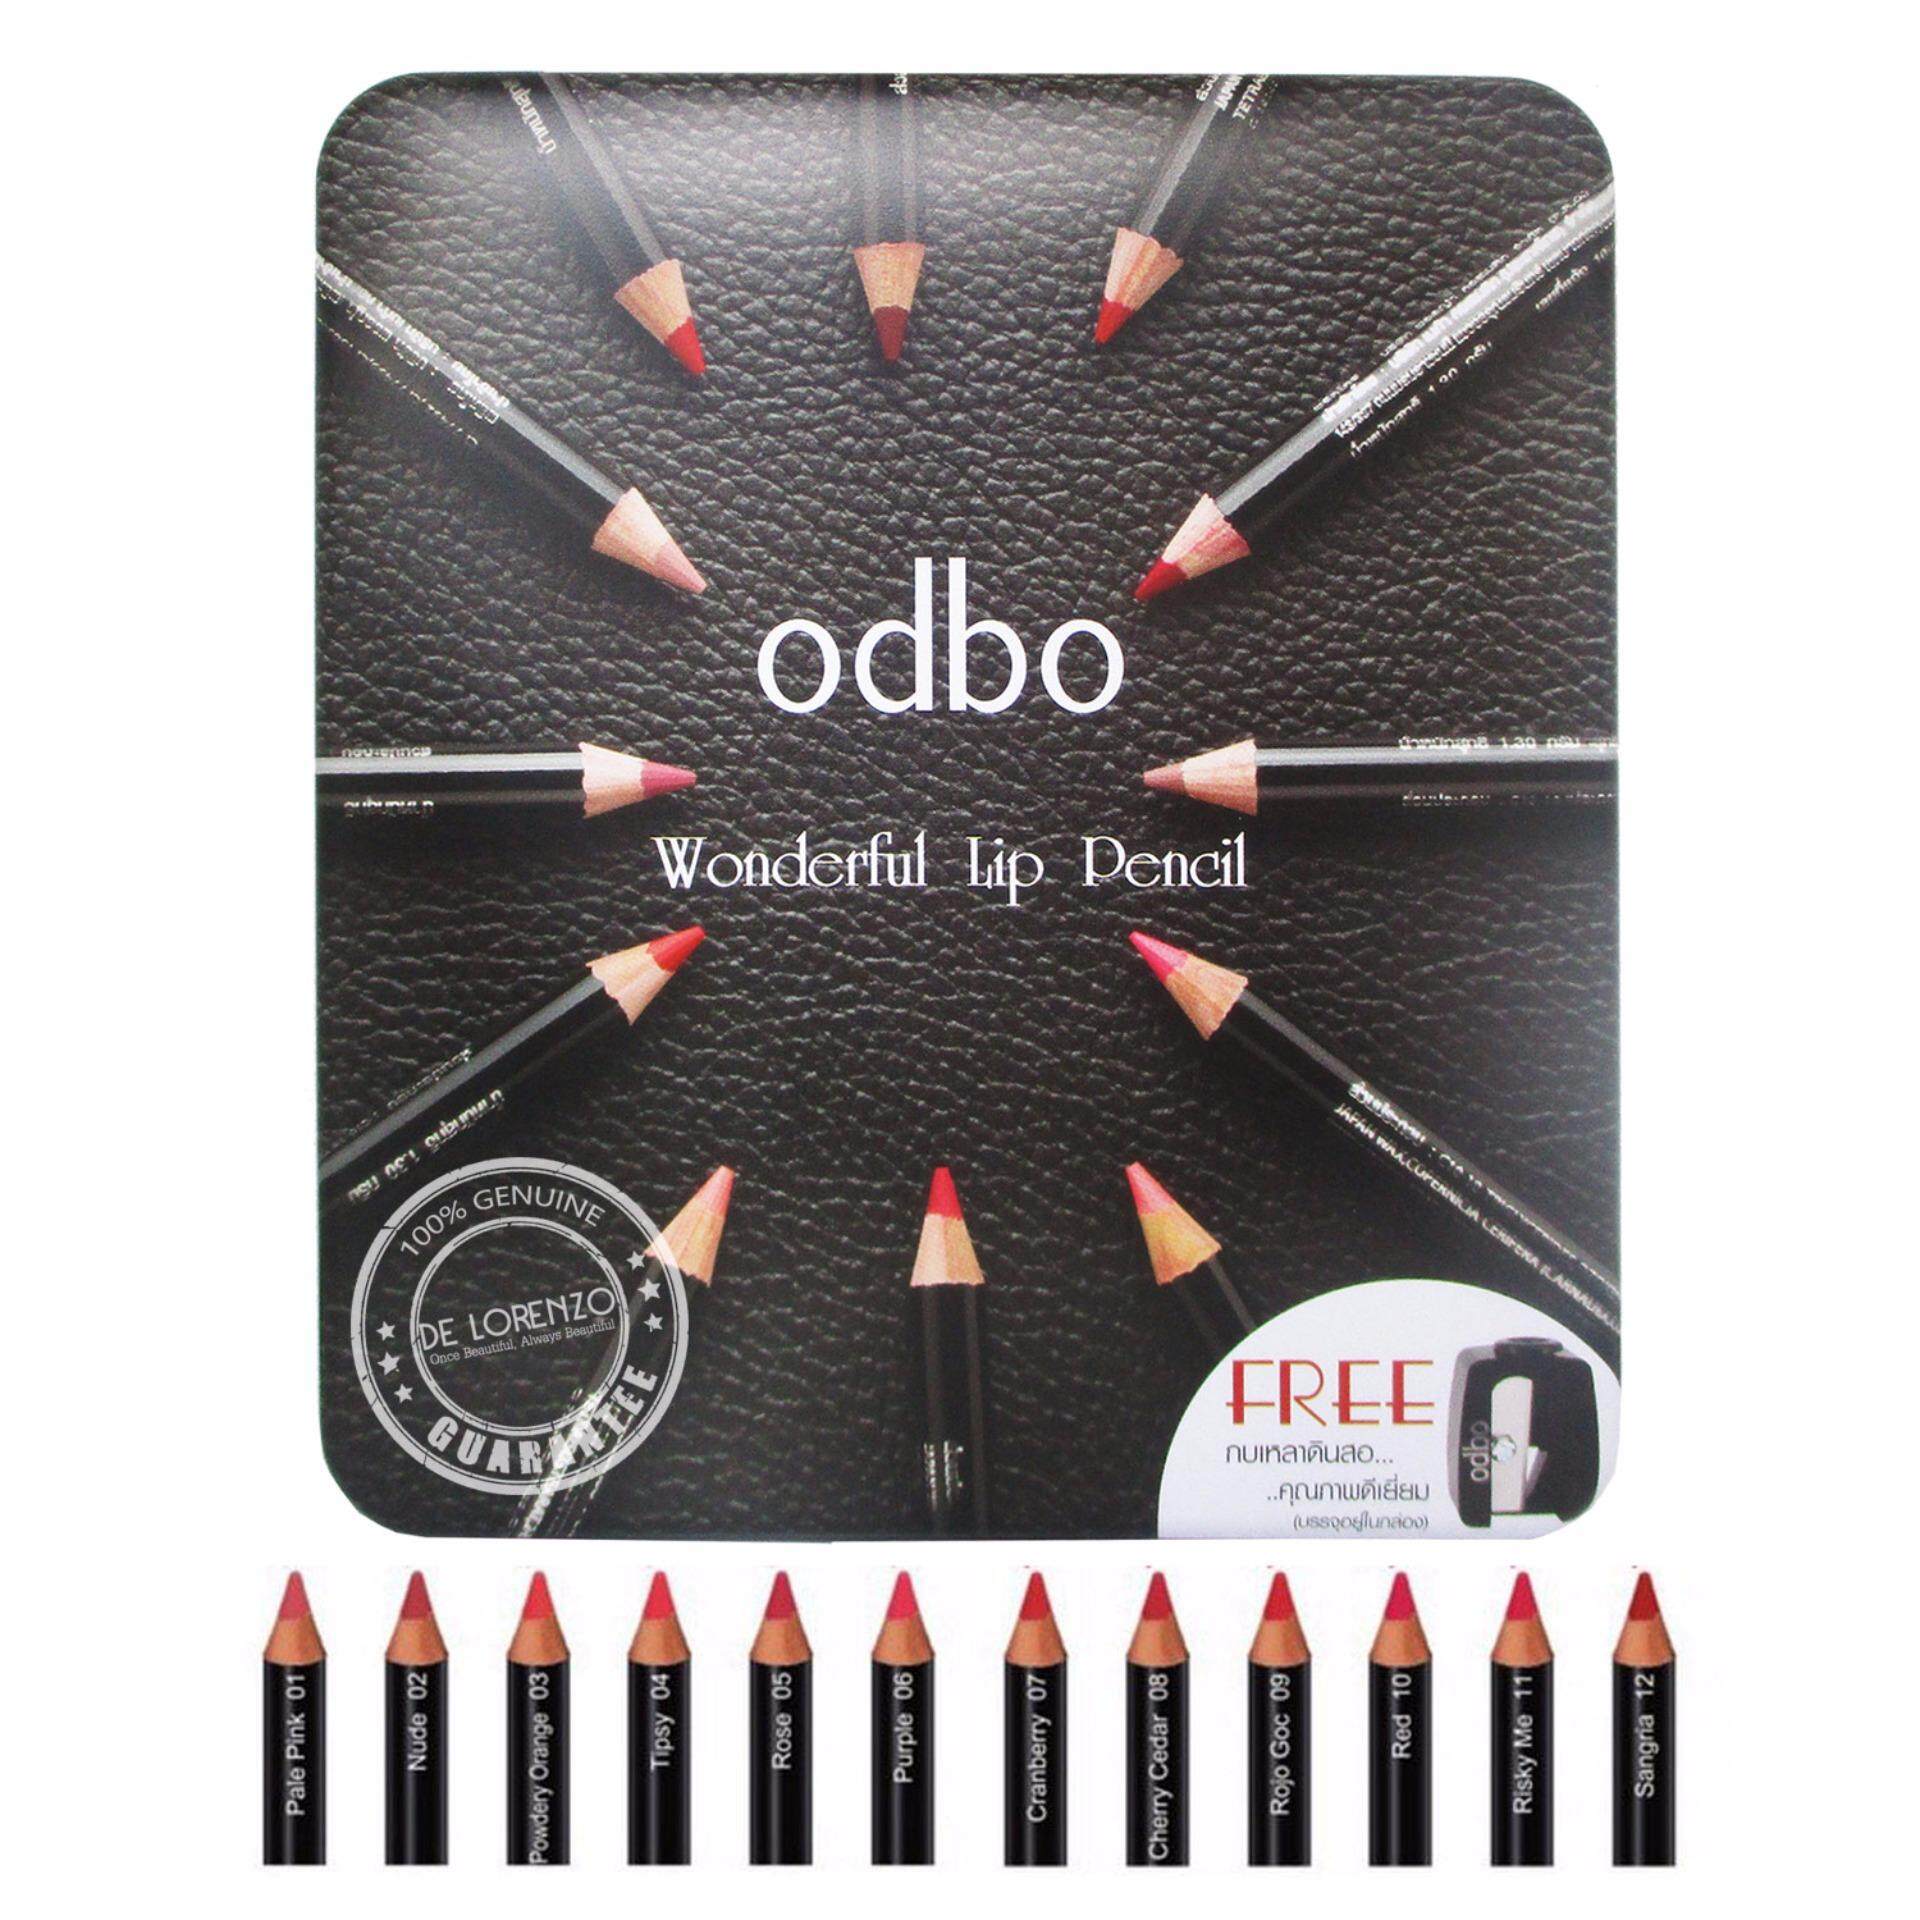 ODBO โอดีบีโอ ลิปเขียนขอบปาก ดินสอเขียนขอบปาก ลิปดินสอ odbo Wonderful Lip Pencil 12 แท่ง OD530